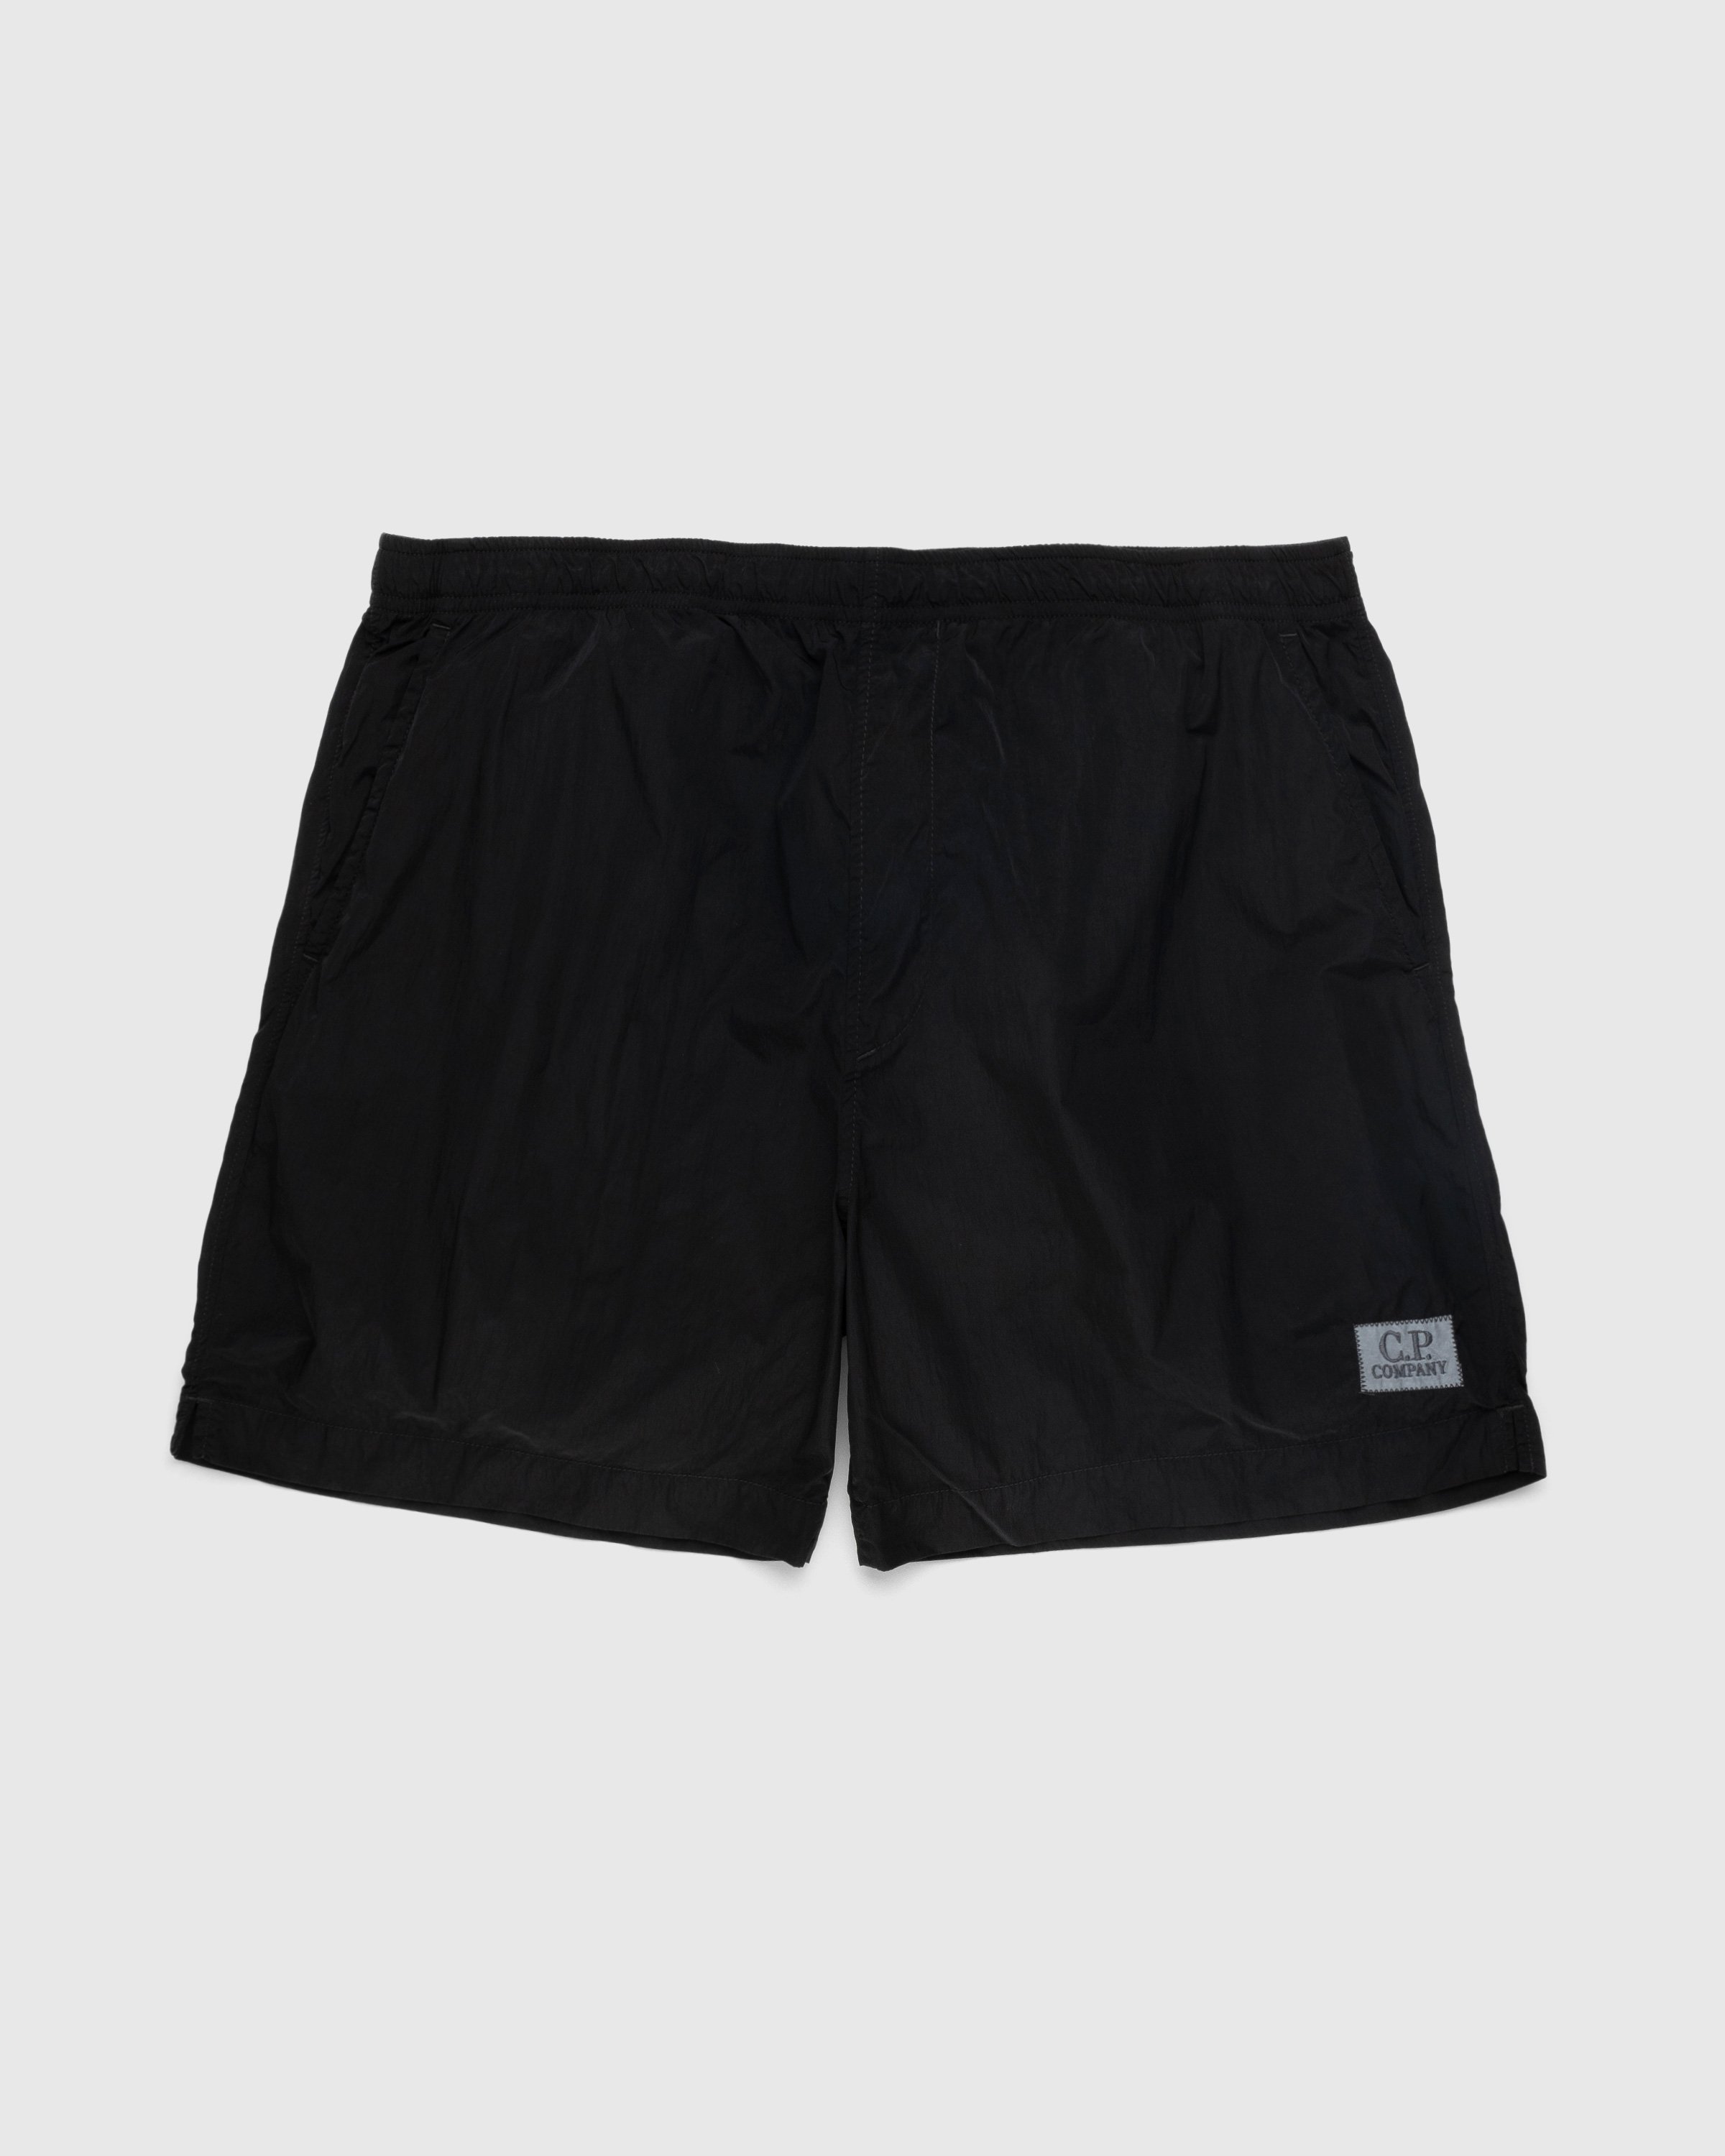 C.P. Company - Eco-Chrome Swim Shorts Black - Clothing - Black - Image 1